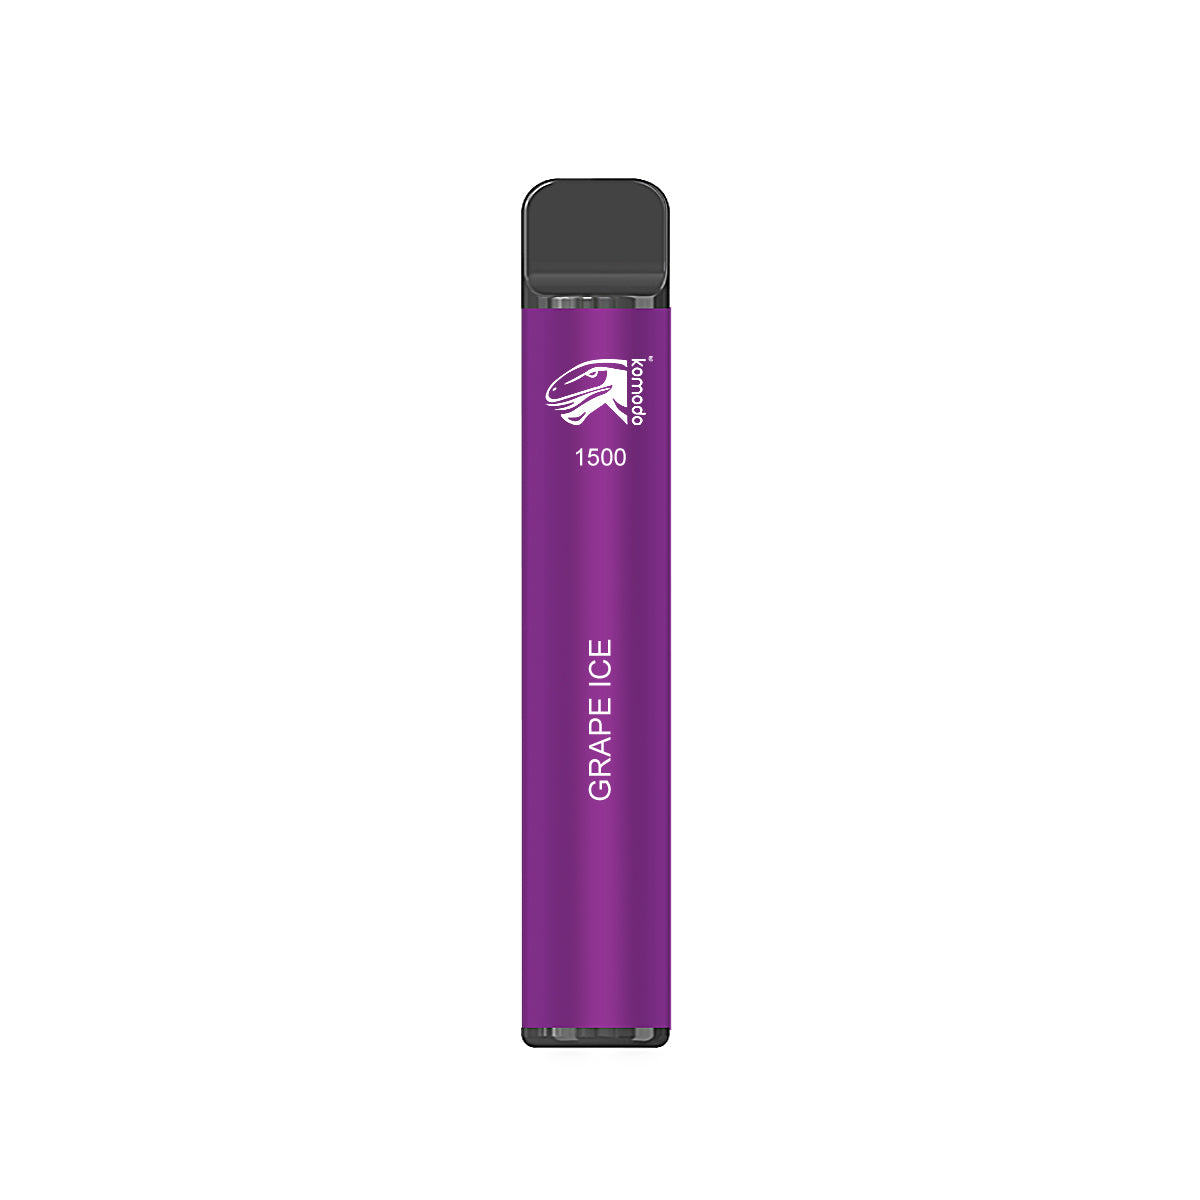 Komodo 1500 Puffs Disposable Vape Prefilled Electronic Cigarette (5pcs)